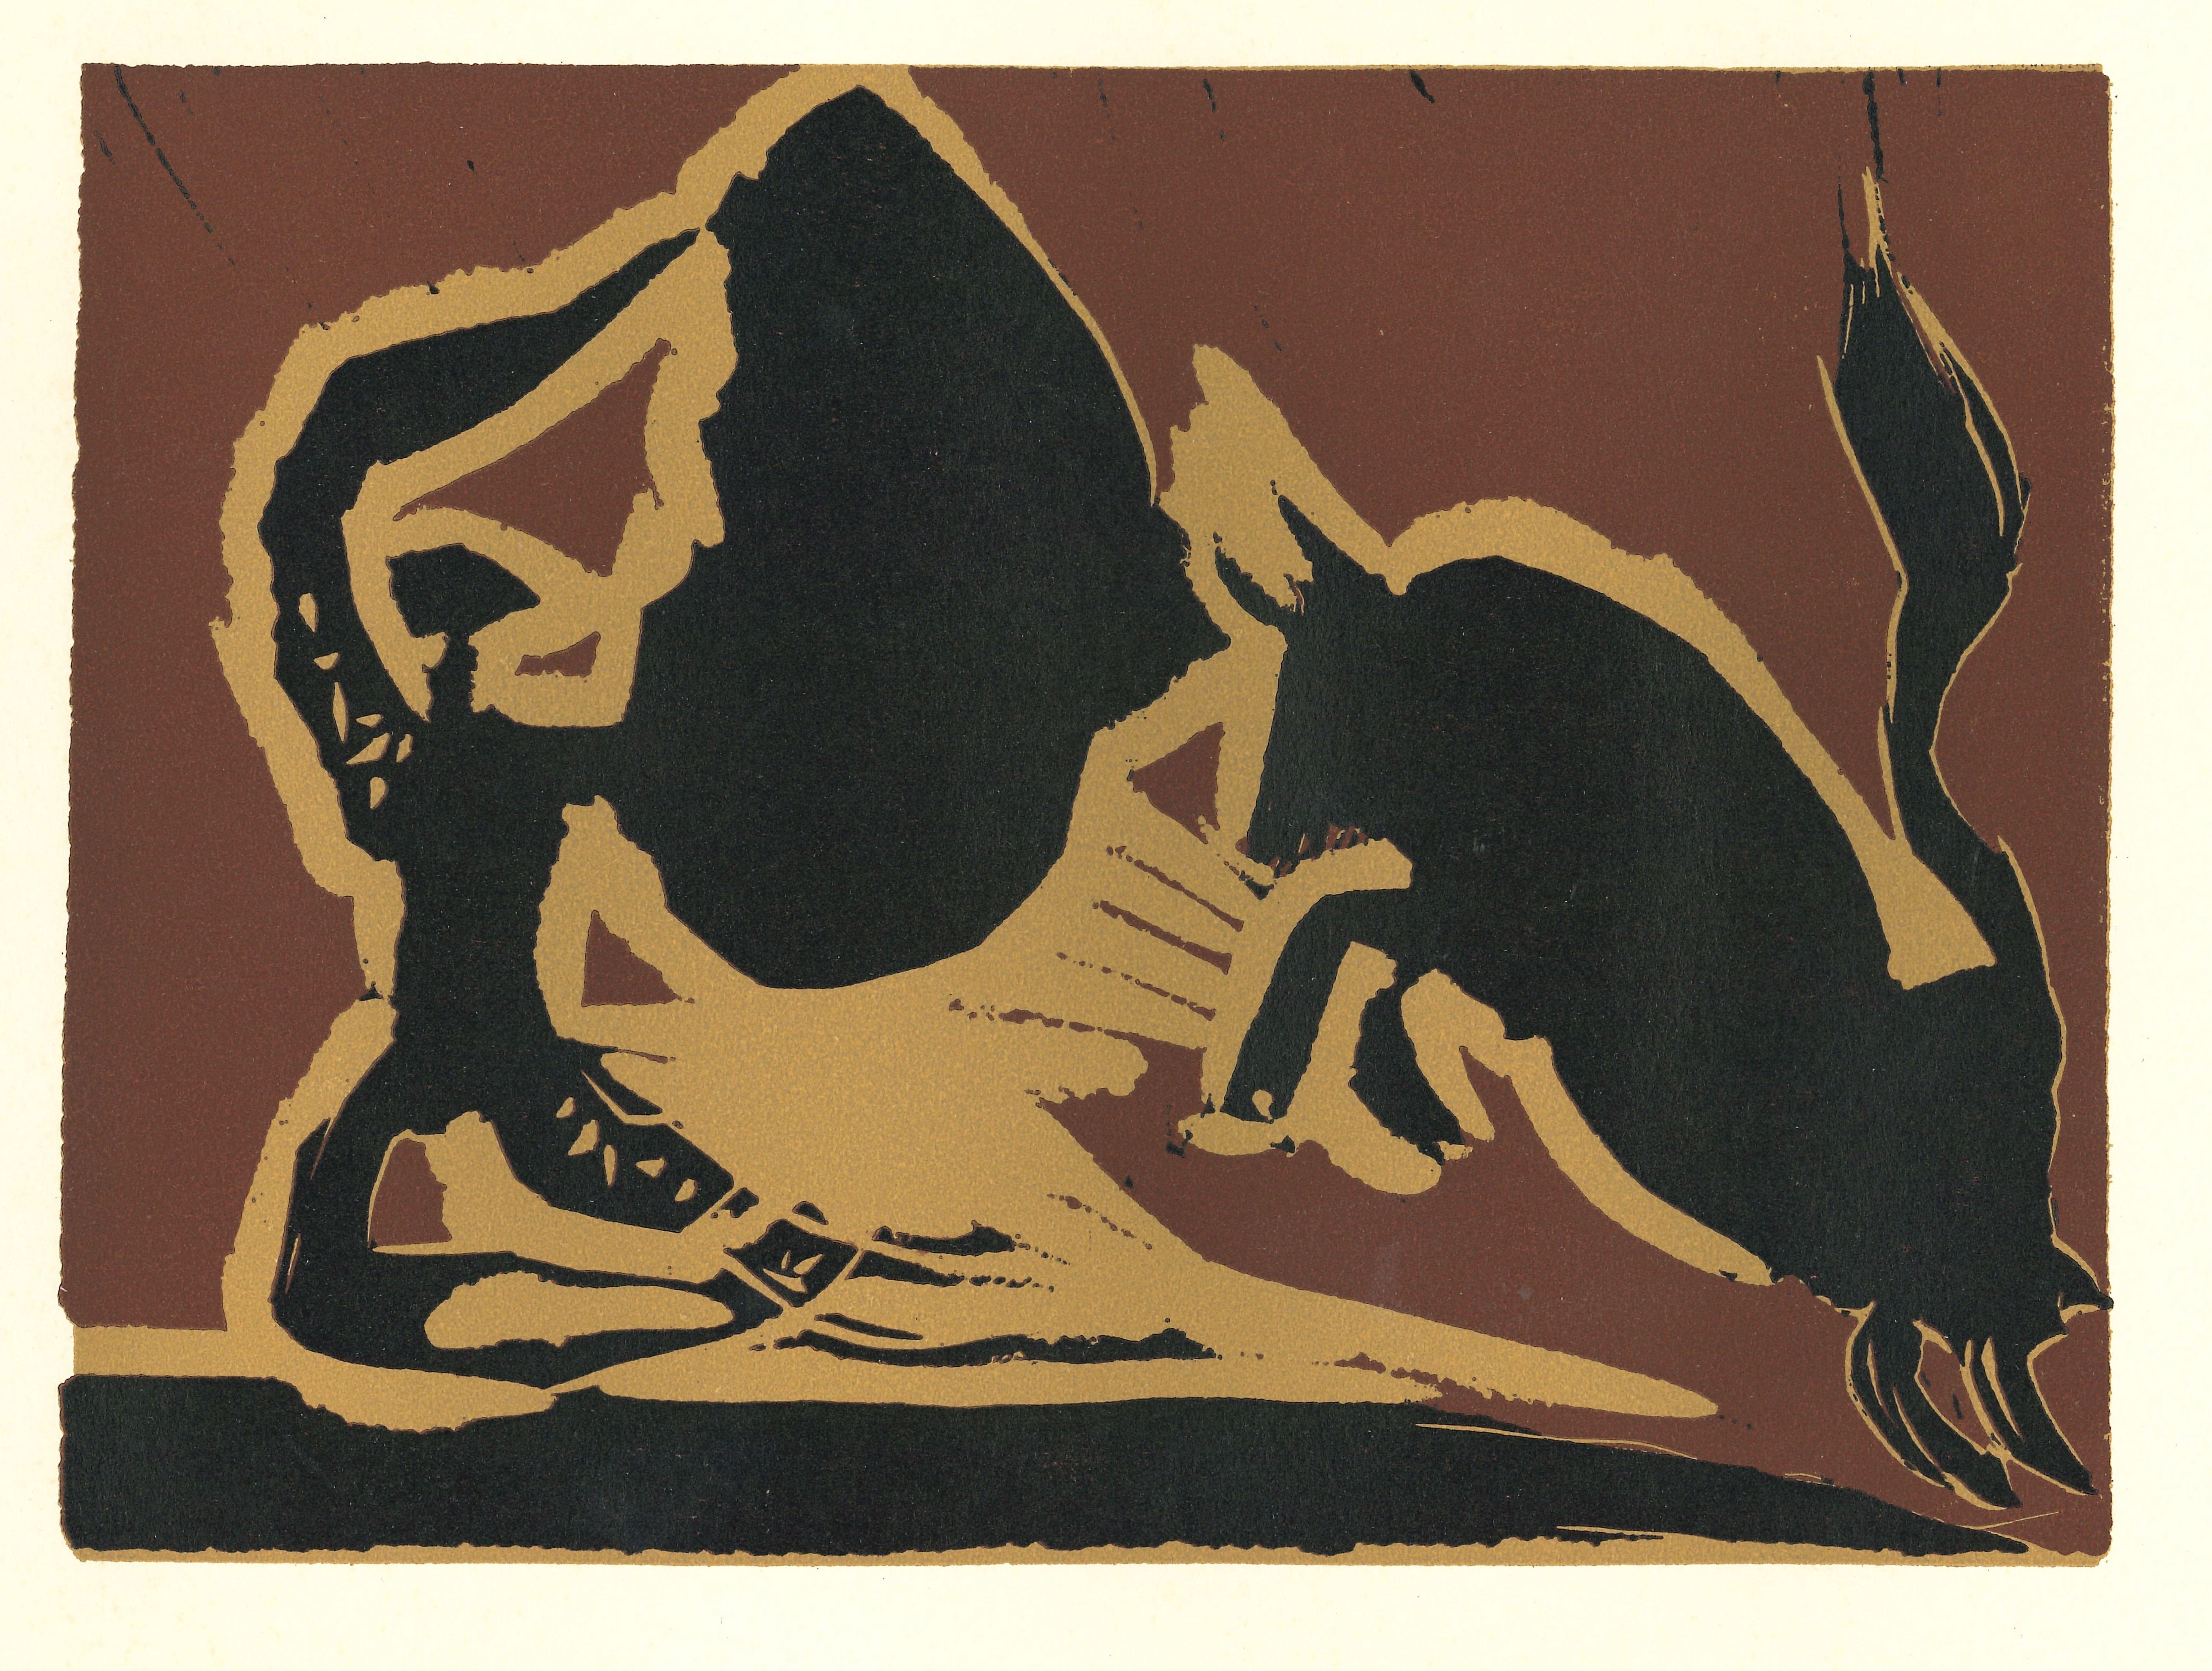 Farol – Linolschnitt nach Pablo Picasso – 1962 – Print von (after) Pablo Picasso